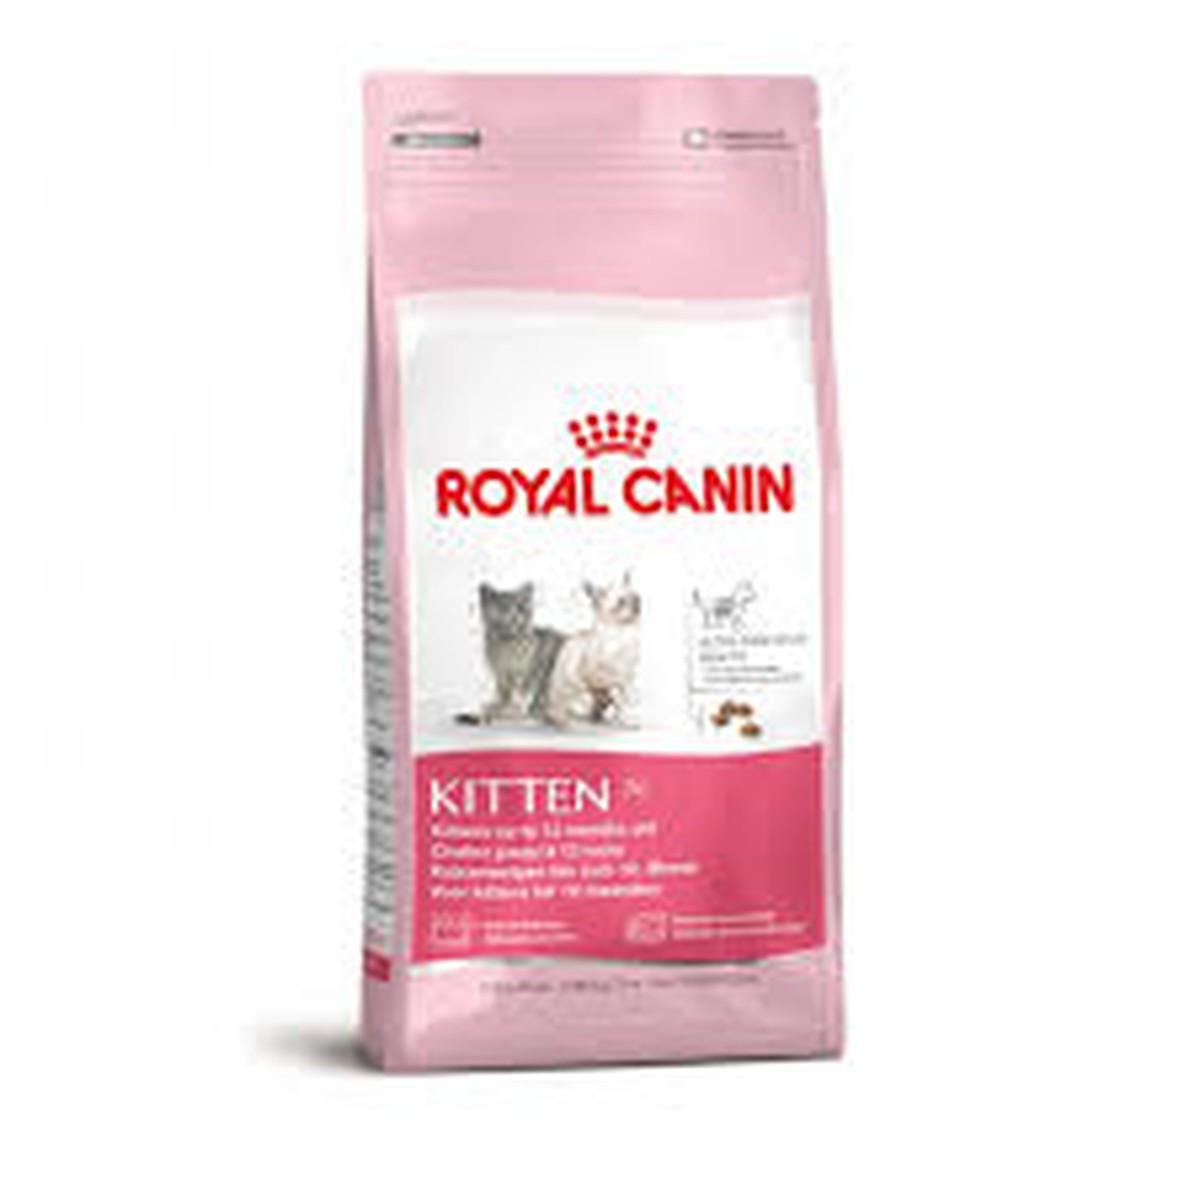 Royal Canin  Kitten 4 kg  4 kg